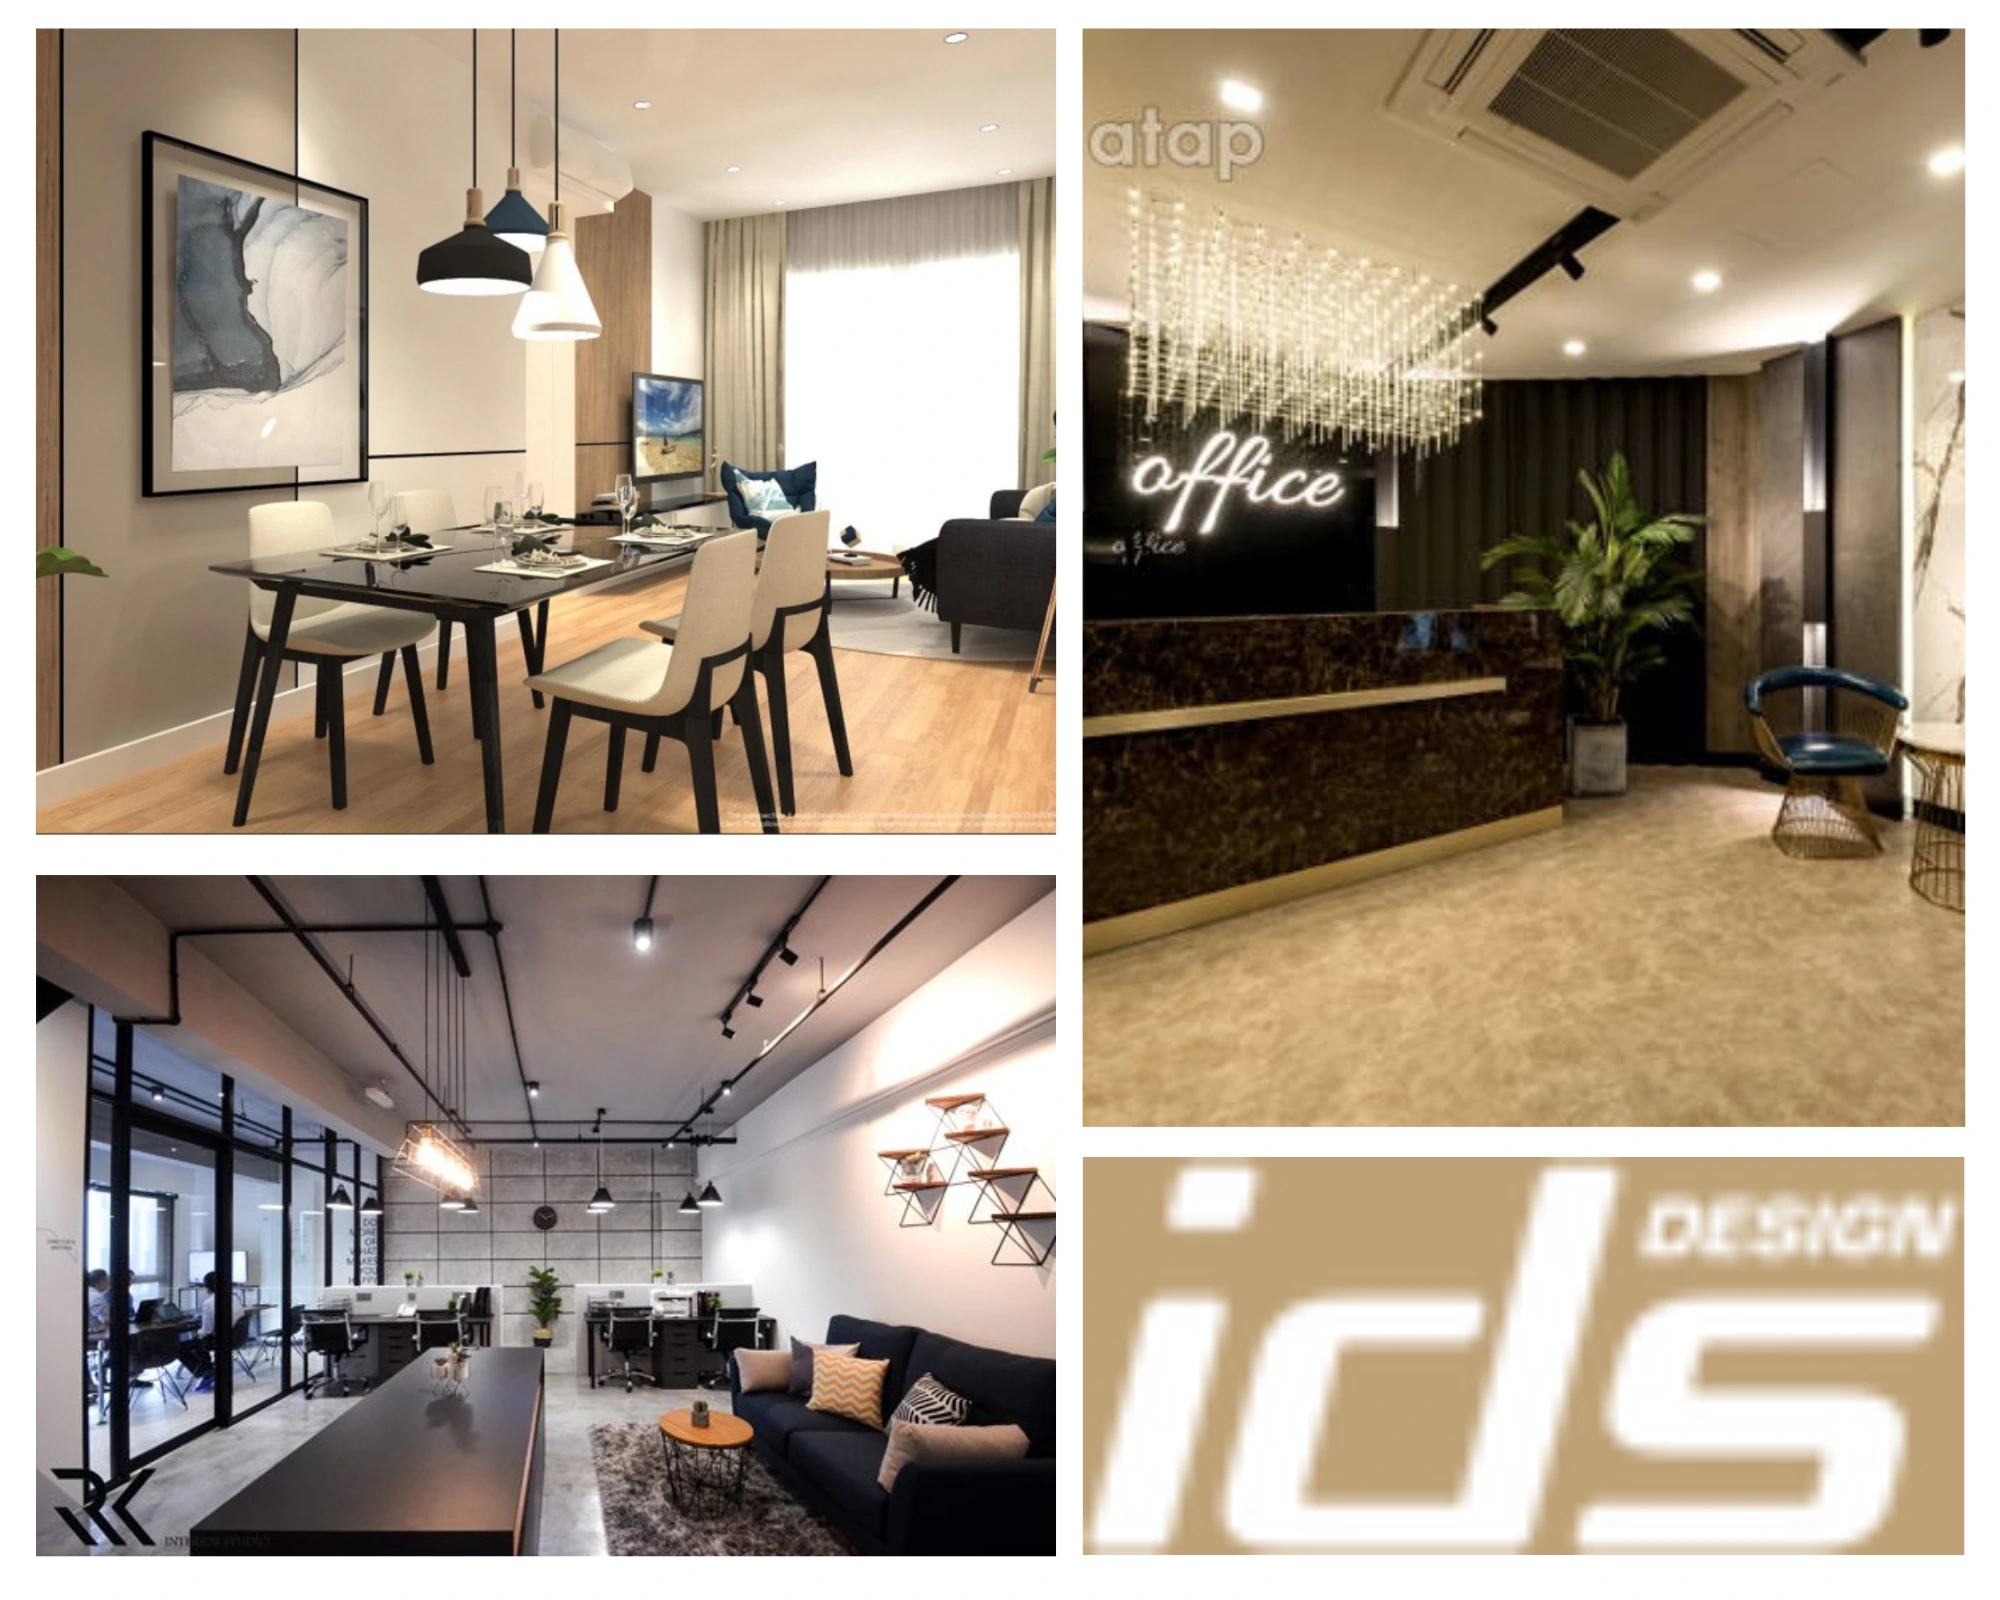 IDS Interior Design